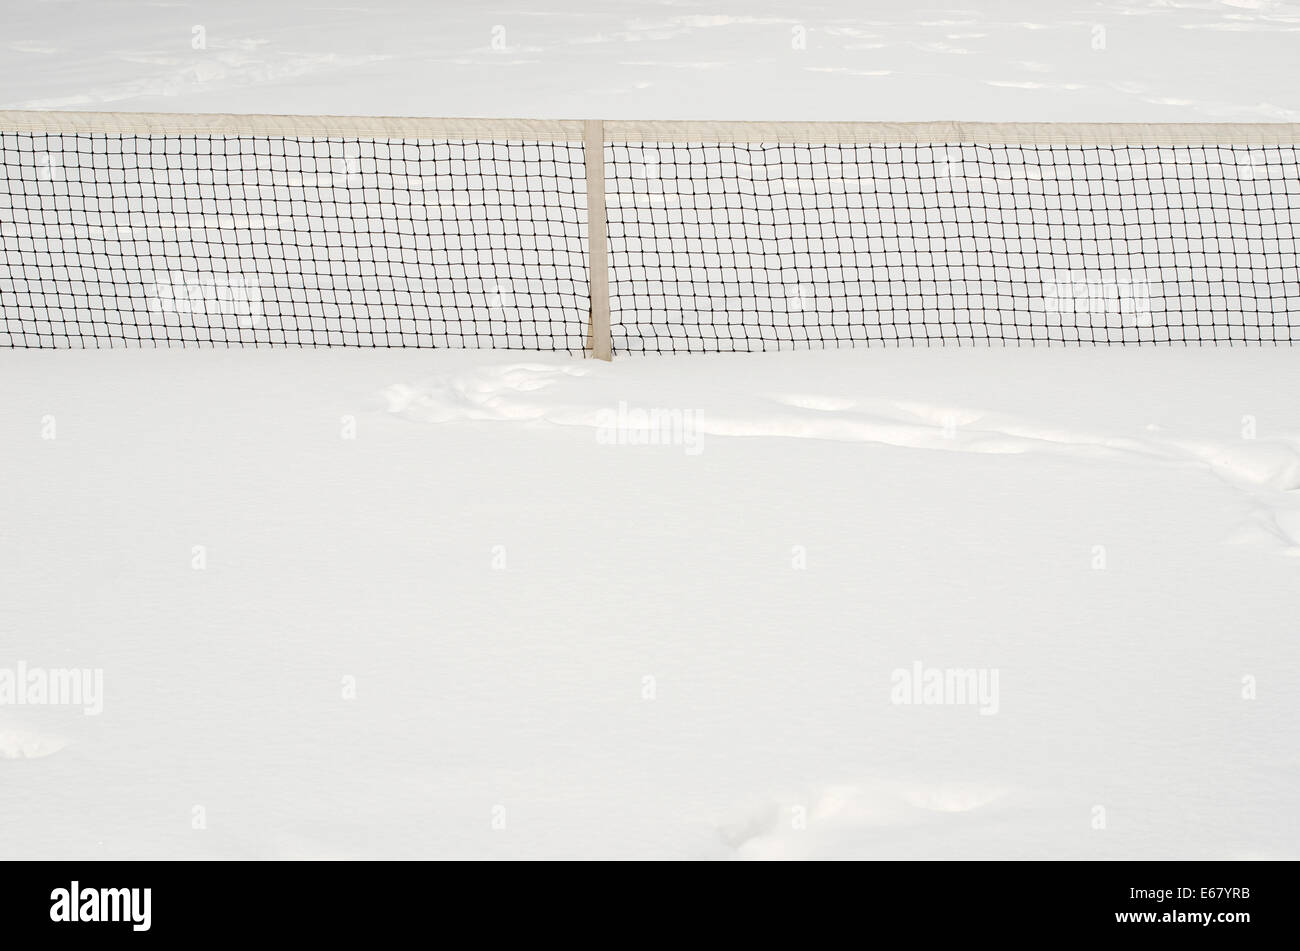 Filet de tennis, à moitié enfoui dans la neige profonde, blanc. Banque D'Images